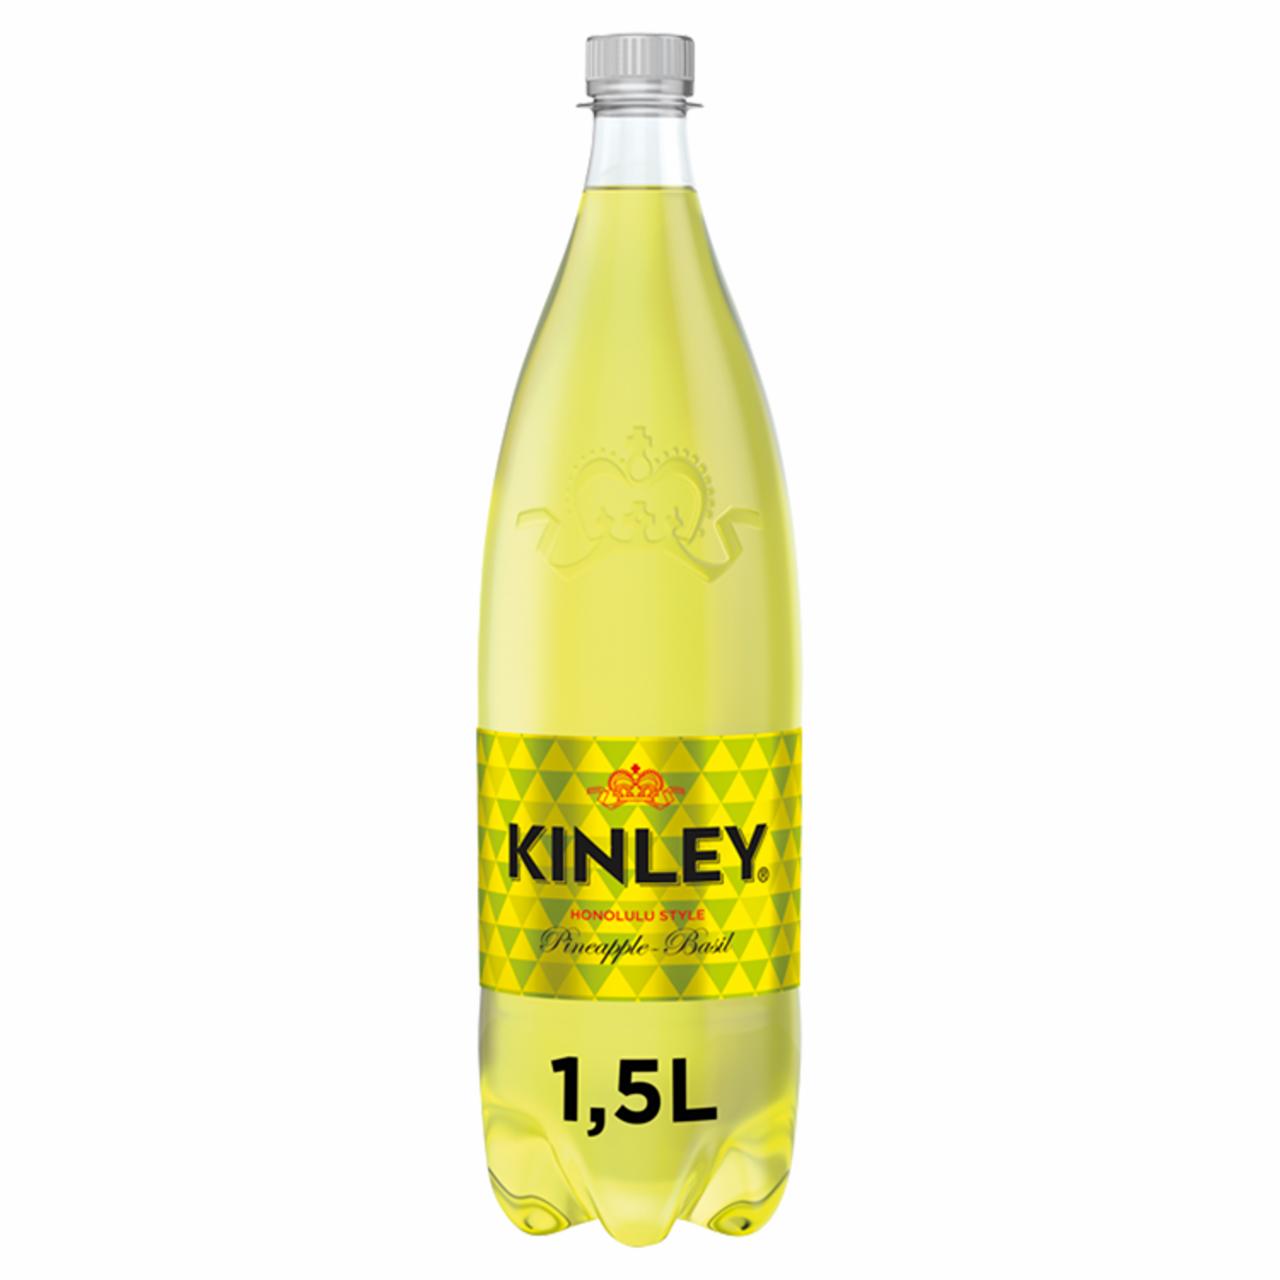 Képek - Kinley ananász és bazsalikom ízű szénsavas üdítőital cukorral, édesítőszerrel 1,5 l